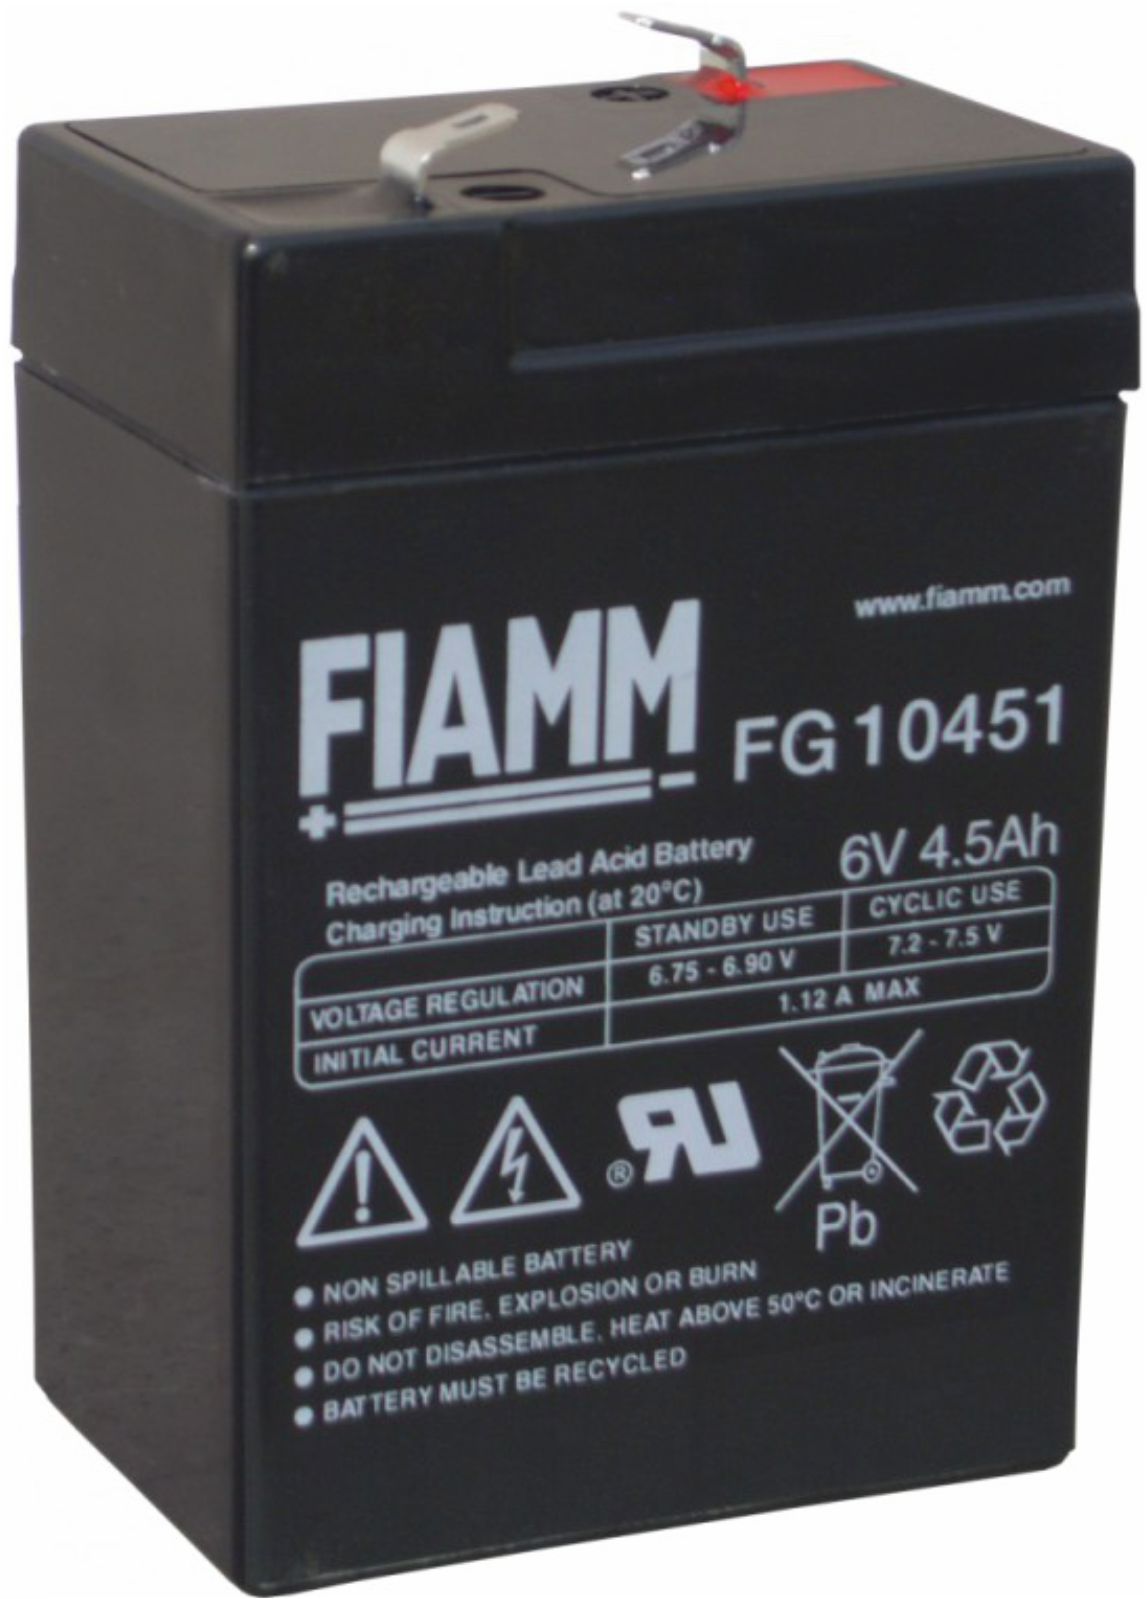 Batteria al piombo Fiamm - FIM FG10451 - Elmax - Materiale elettrico online